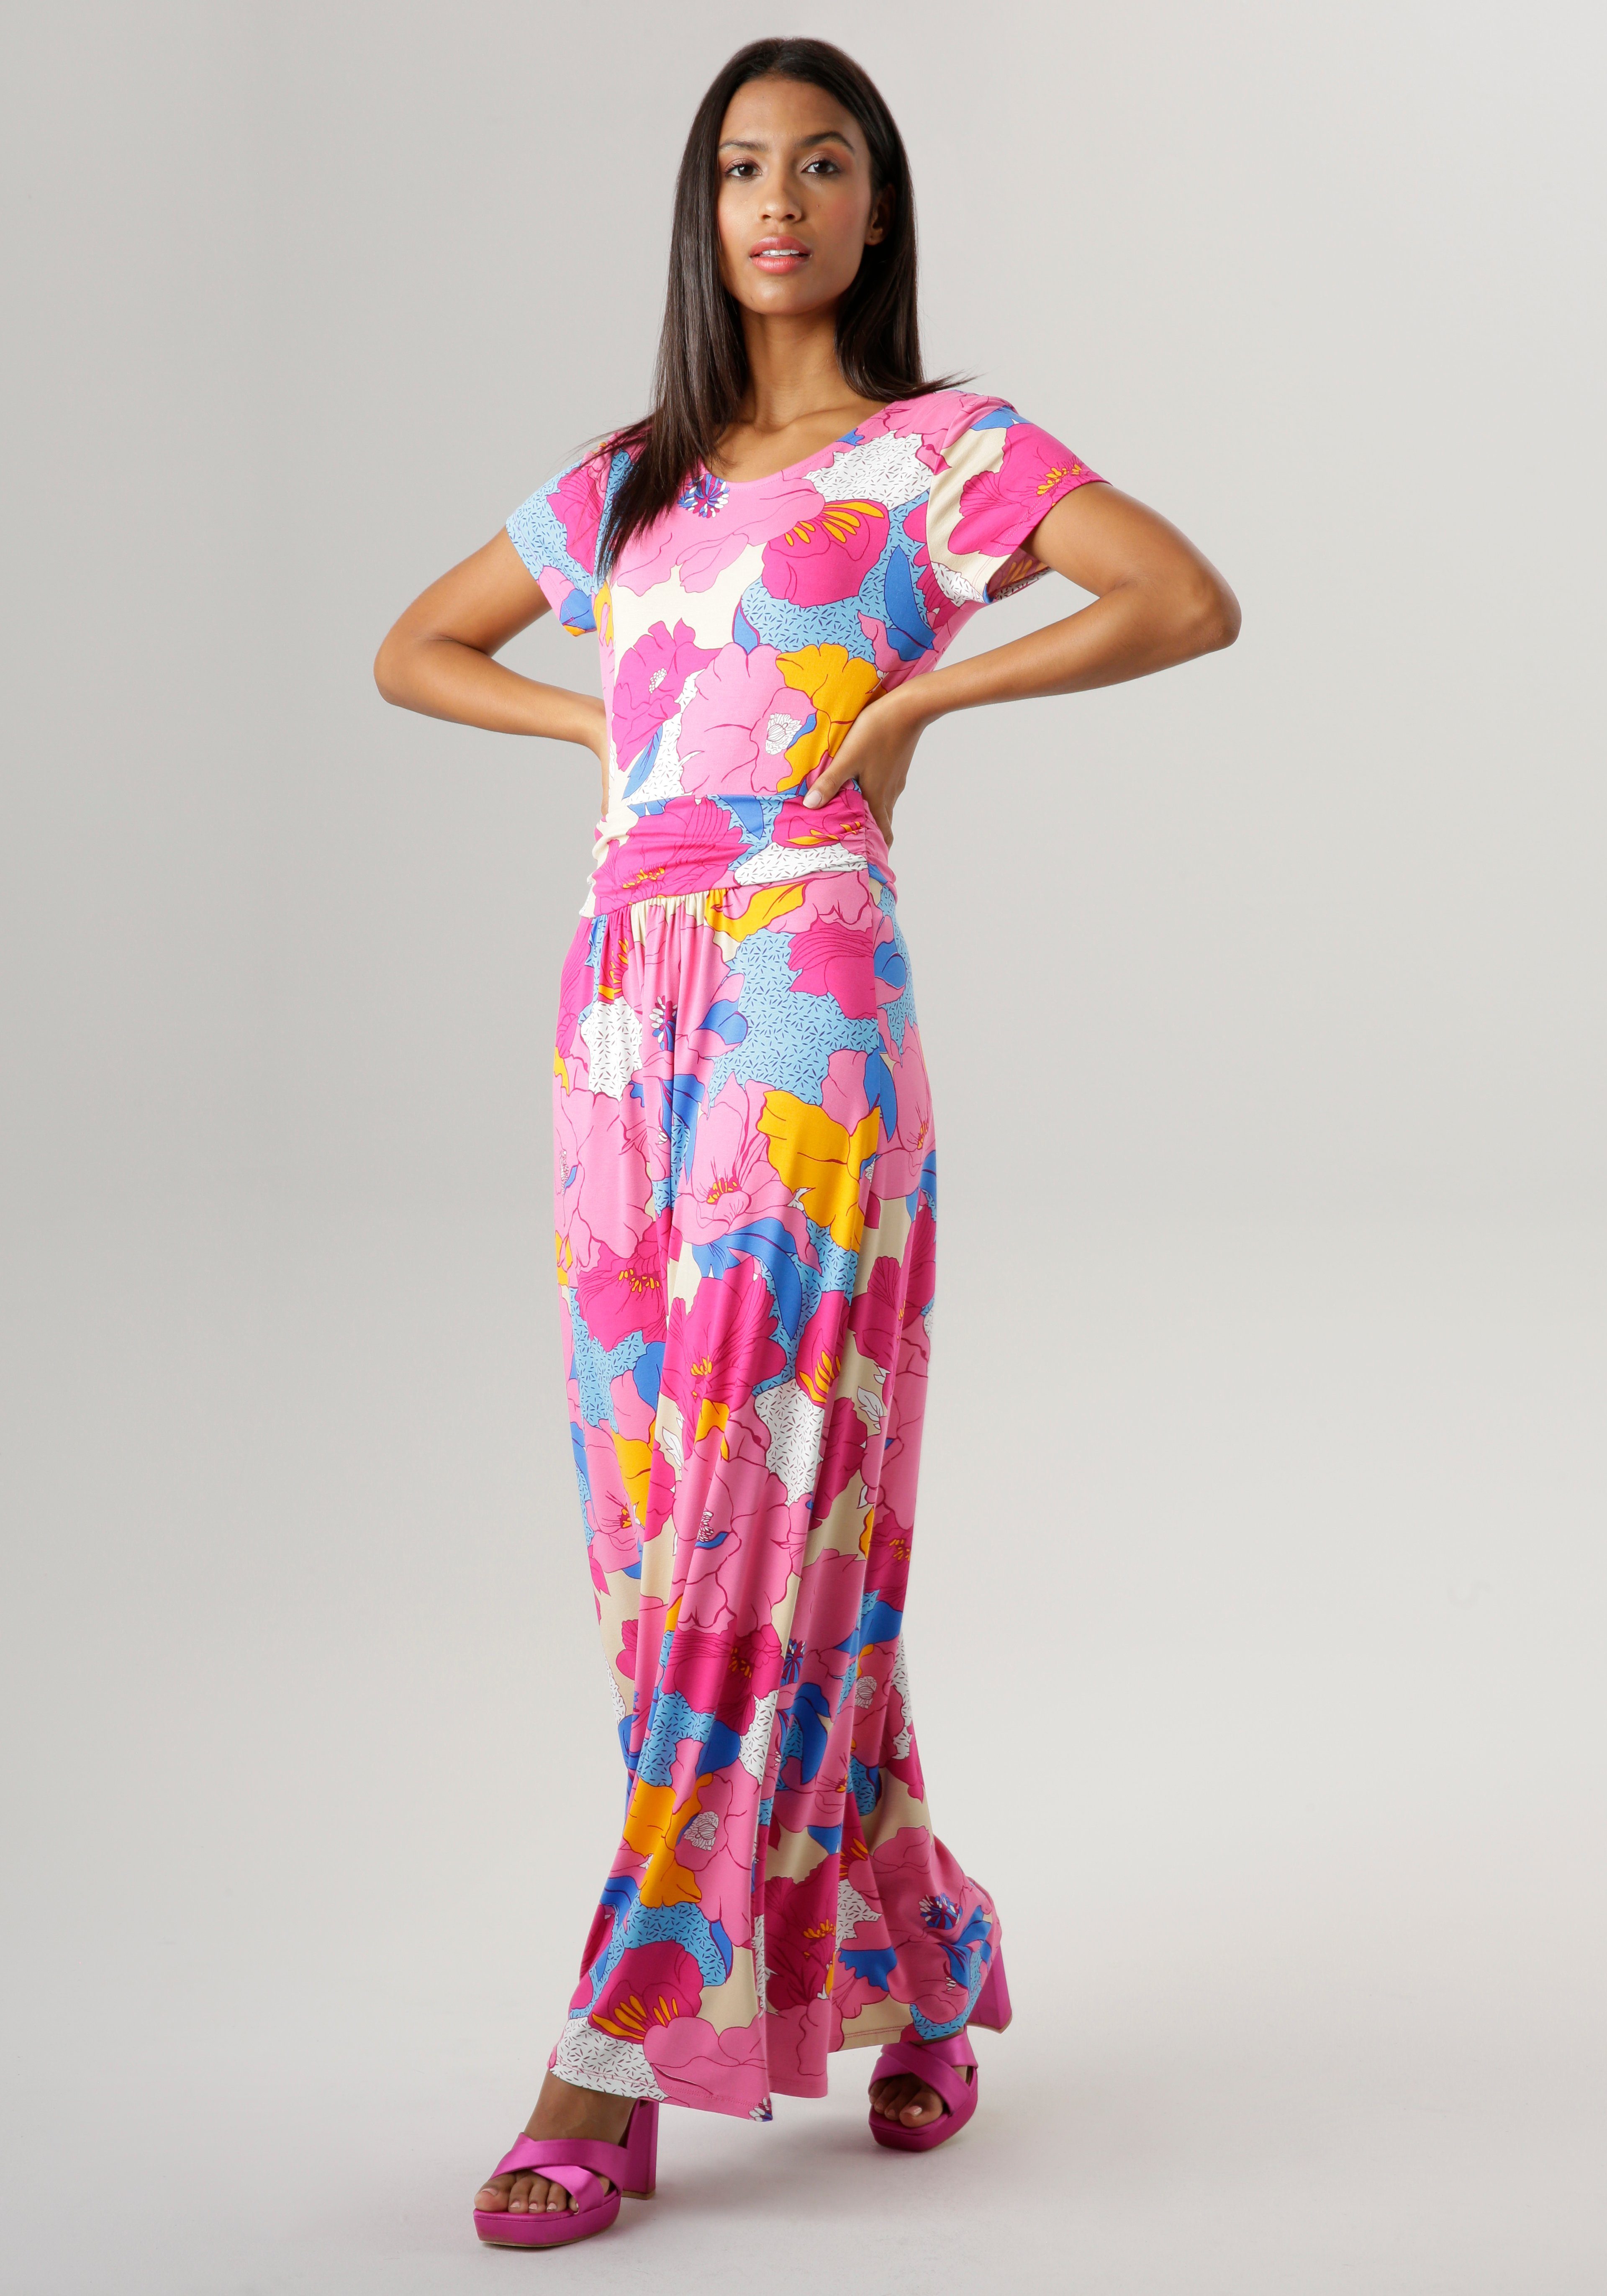 Blütendruck - NEUE farbenfrohem - Aniston mit Teil ein KOLLEKTION SELECTED Jedes Unikat Sommerkleid